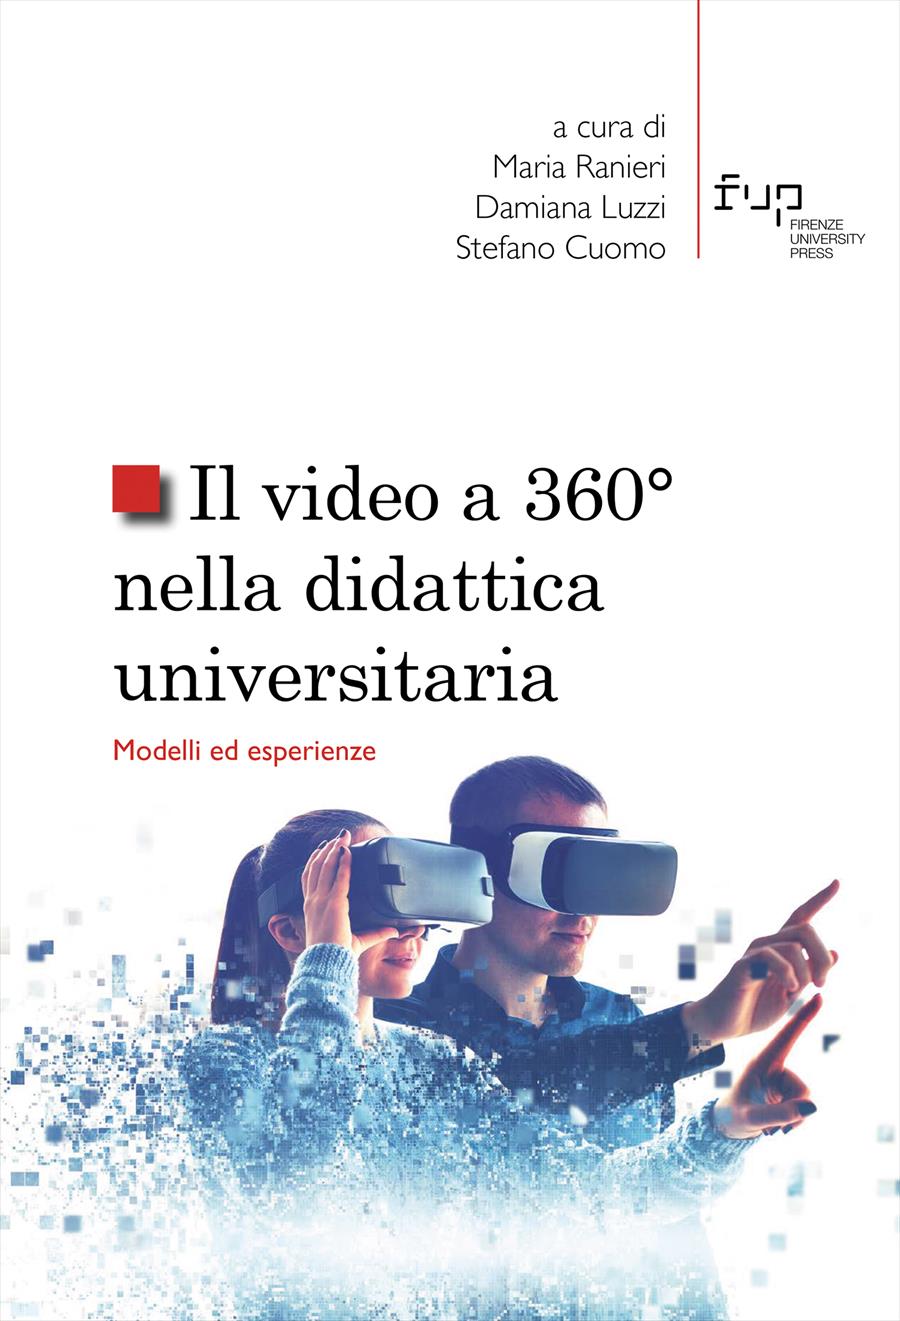 Book_Video_a_360_nella didattica_universitaria